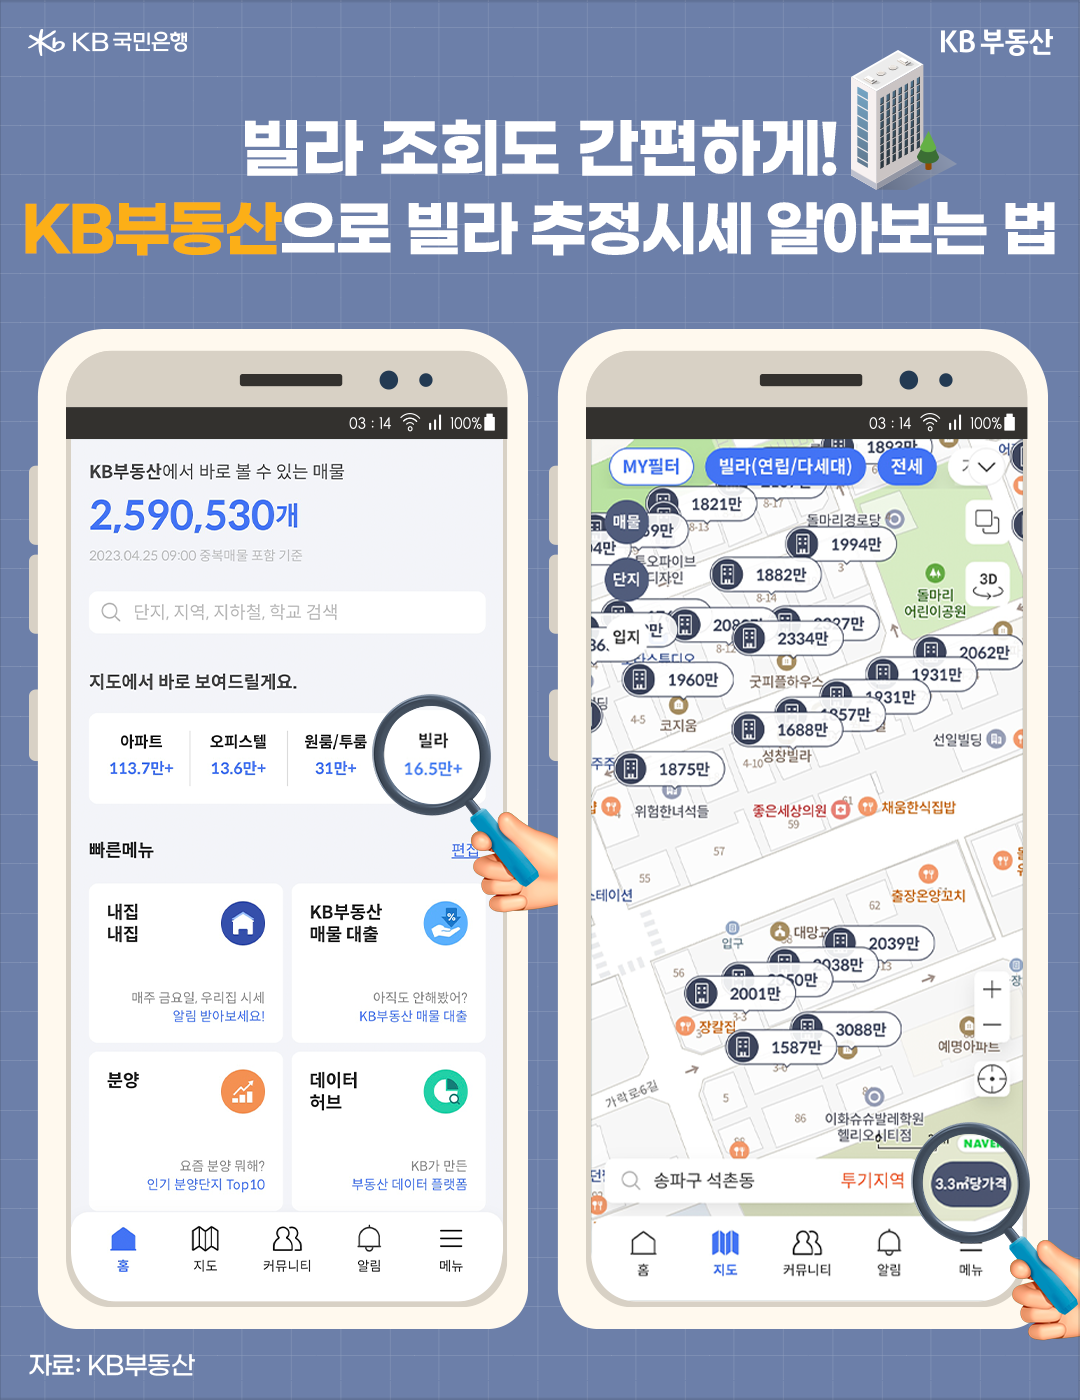 'KB부동산' 앱에서 지원하는 빌라 '추정시세' 검색 기능. 빌라 외에도 아파트나 오피스텔, 원룸 등의 평당 시세 등을 조회할 수 있음.